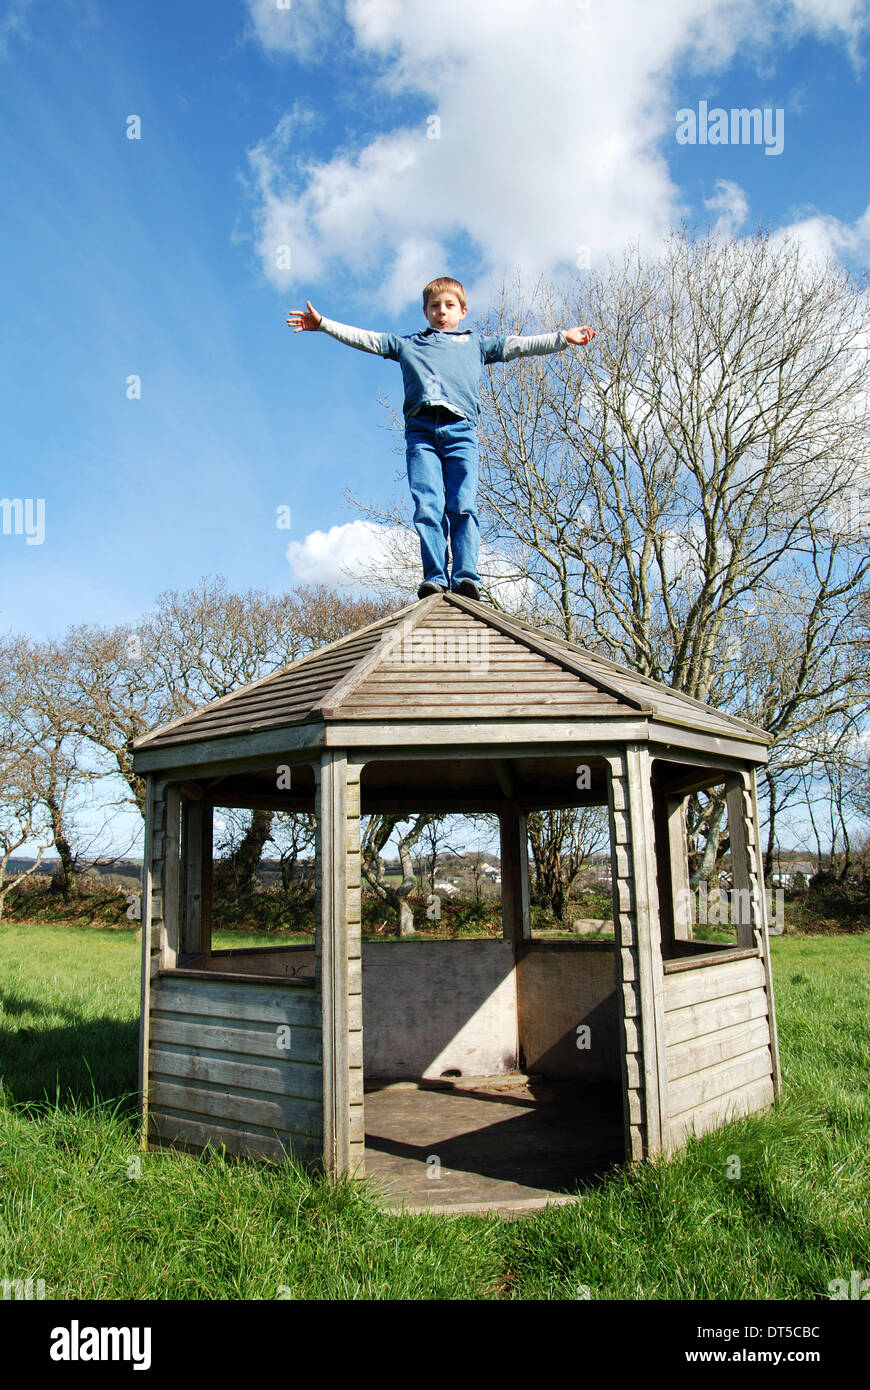 Un petit garçon sur le toit d'une maison d'été Banque D'Images